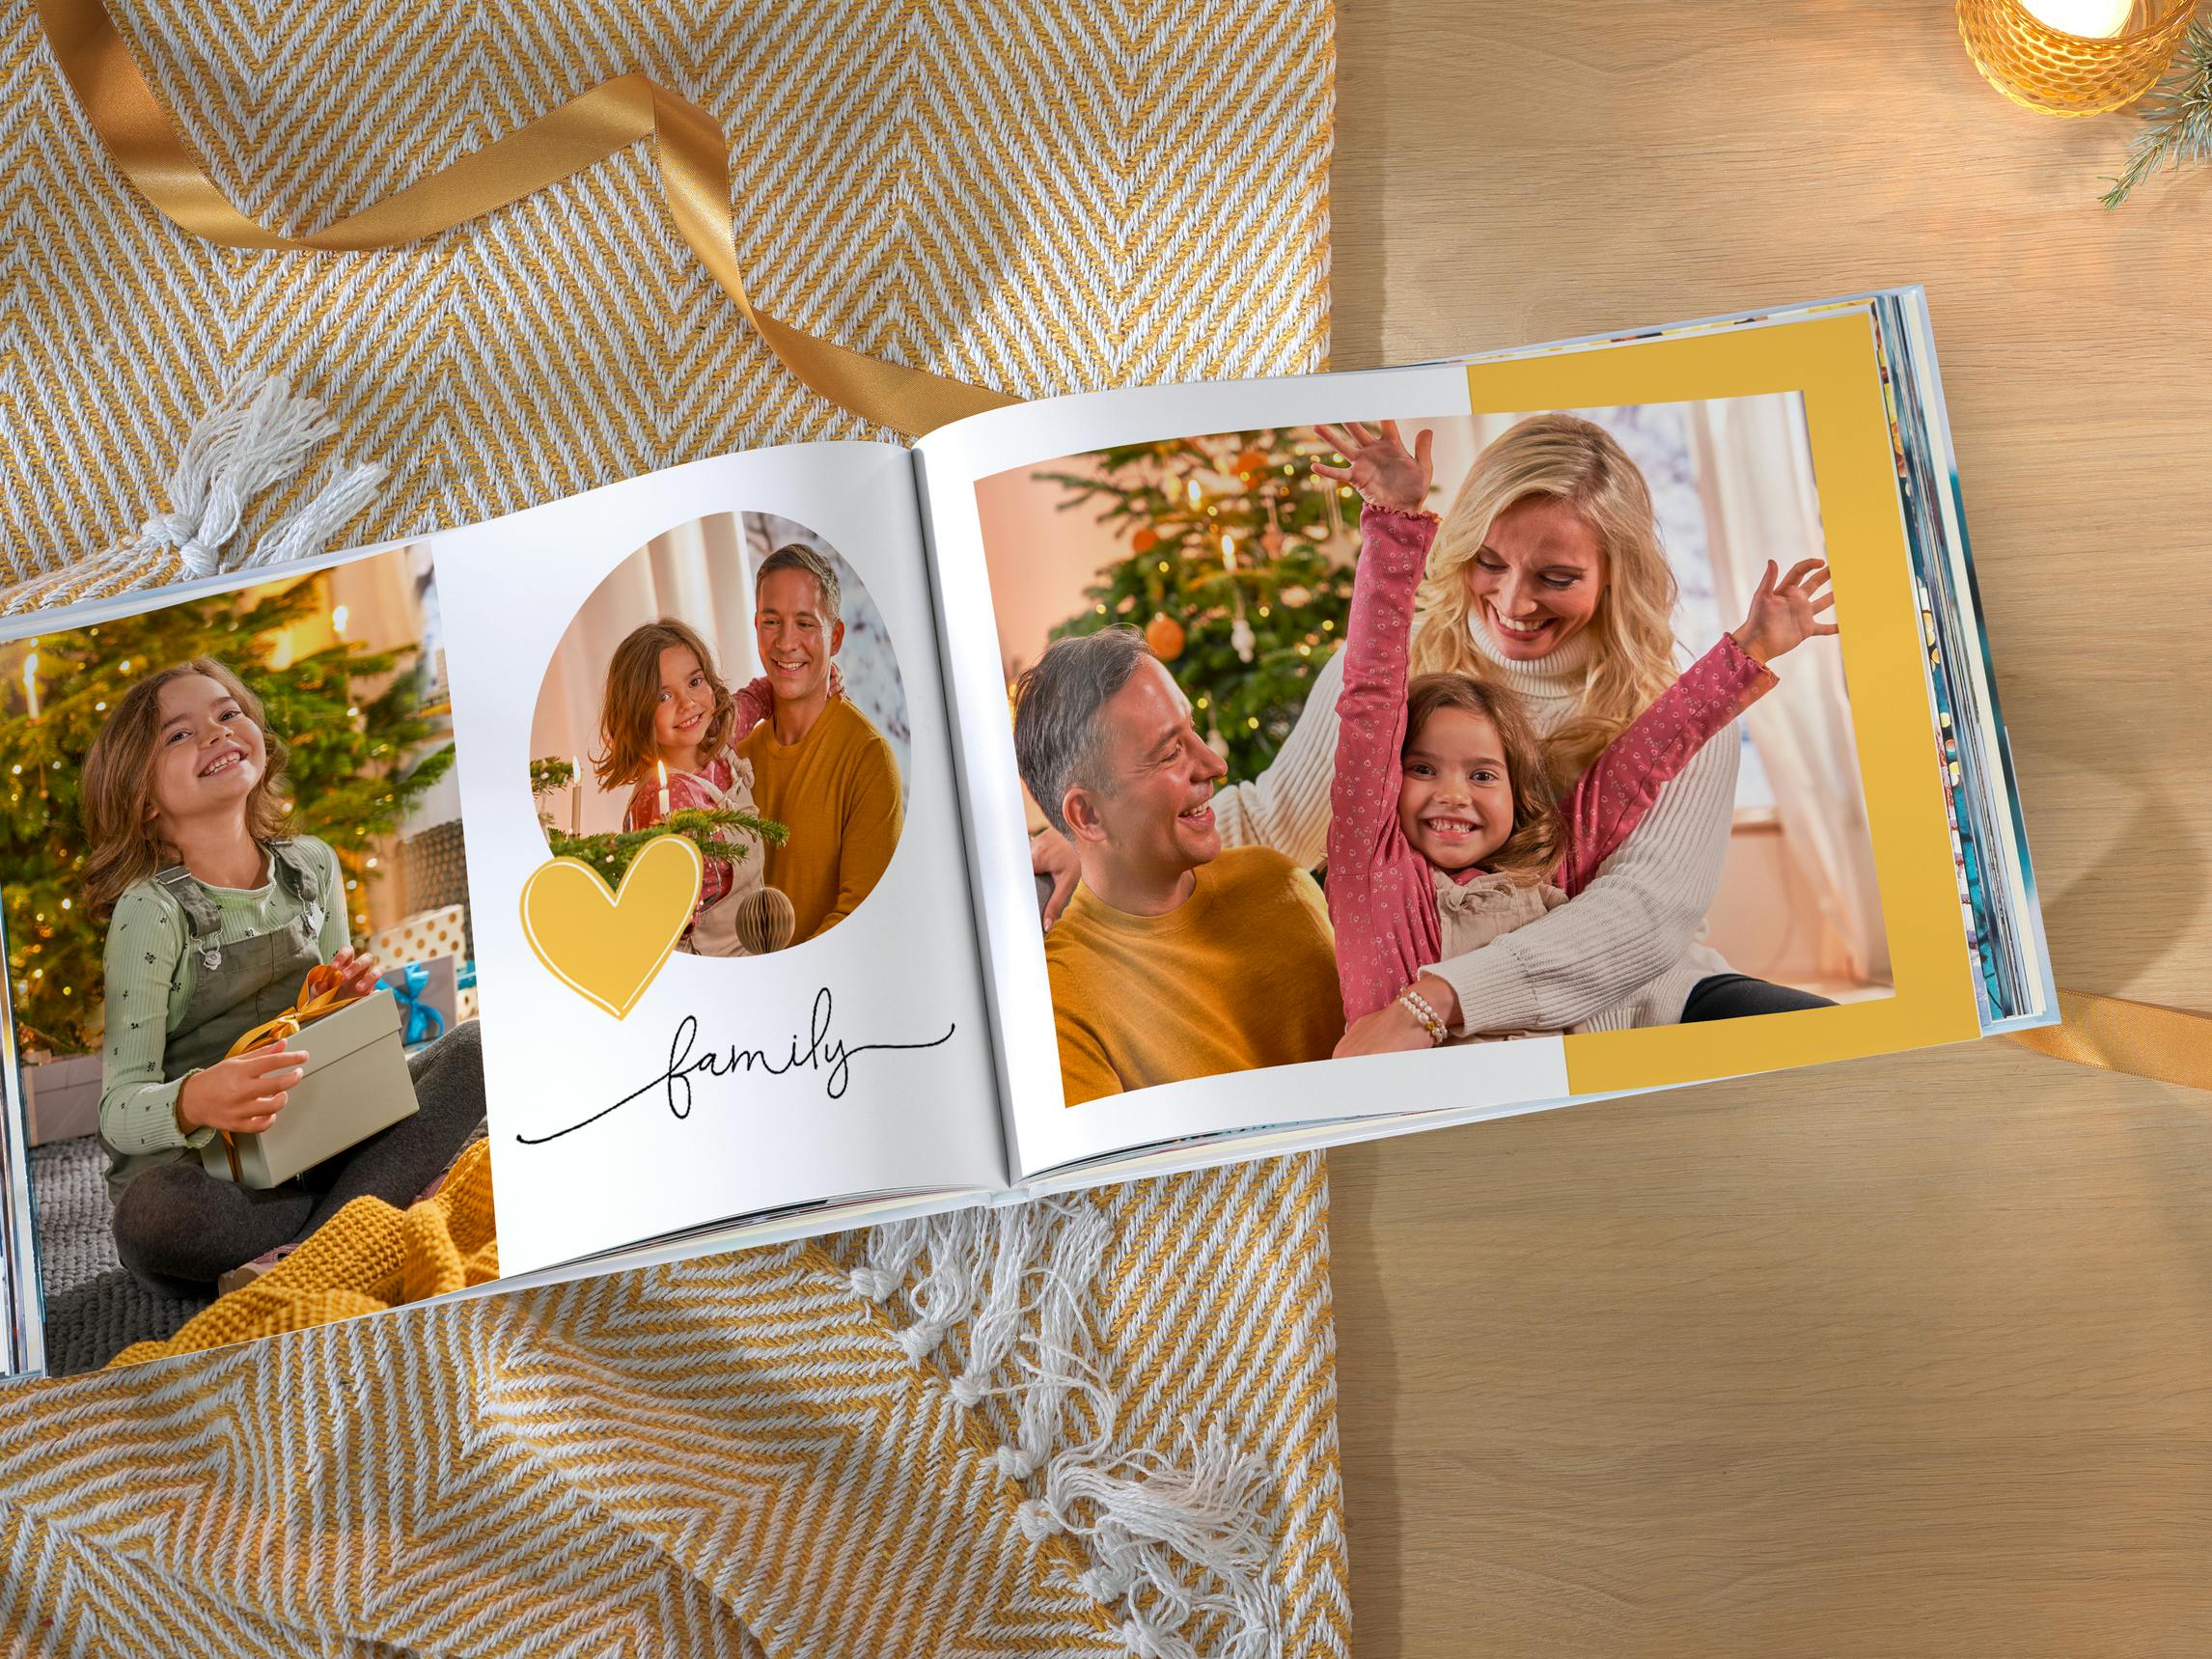 Gepersonaliseerd fotoalbum met familiefoto's in kerstsfeer